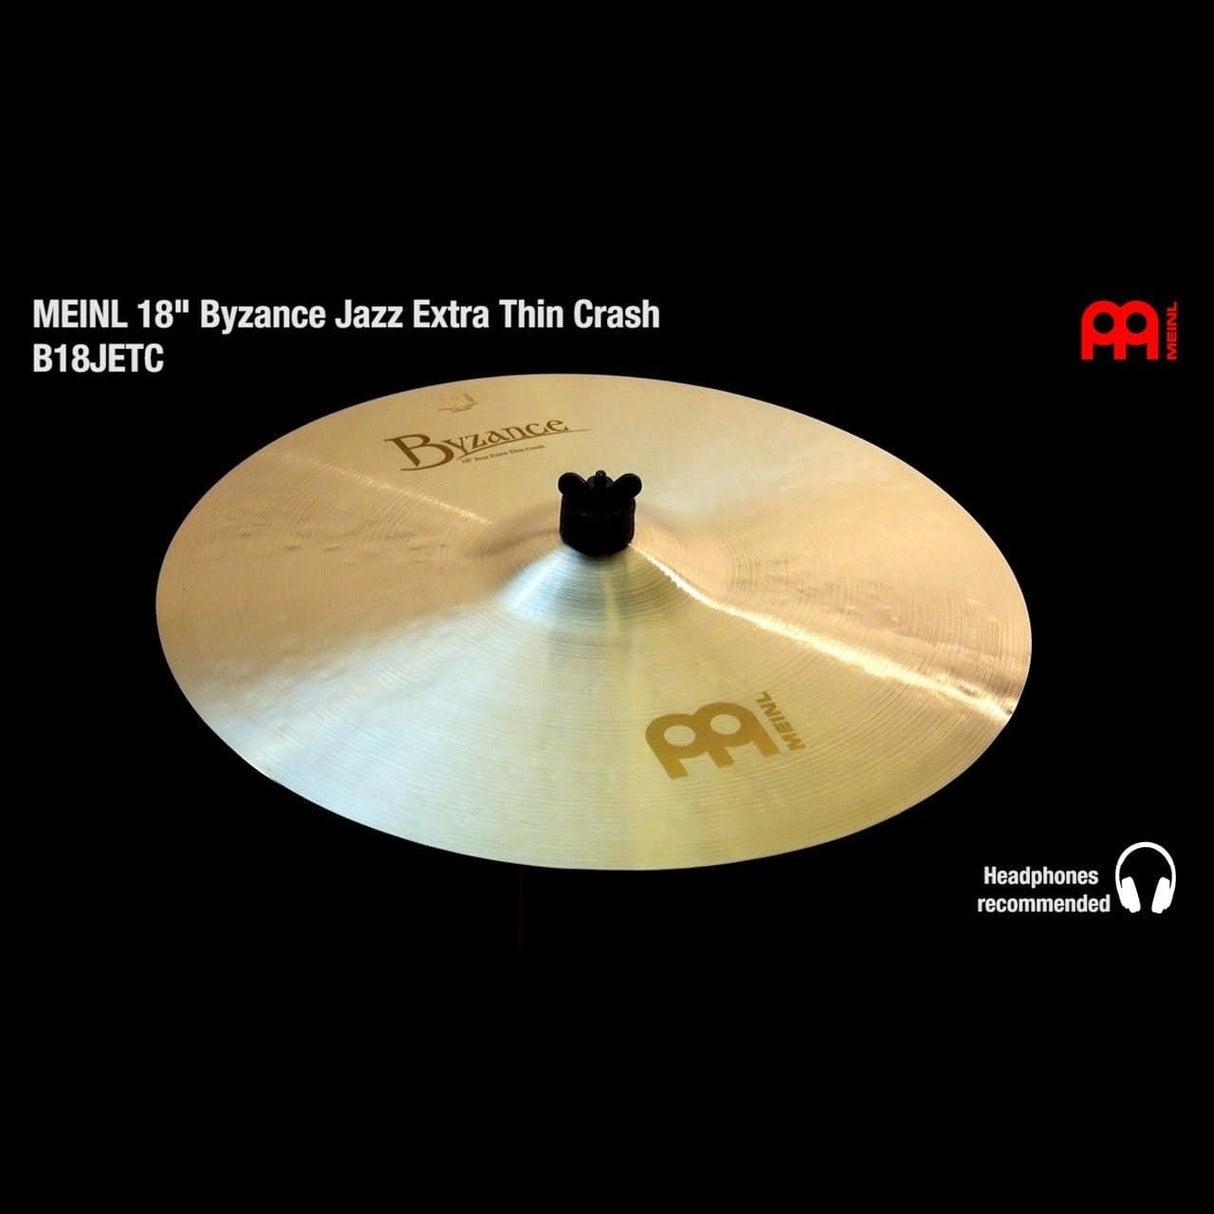 Meinl Byzance Jazz Extra Thin Crash Cymbal 18